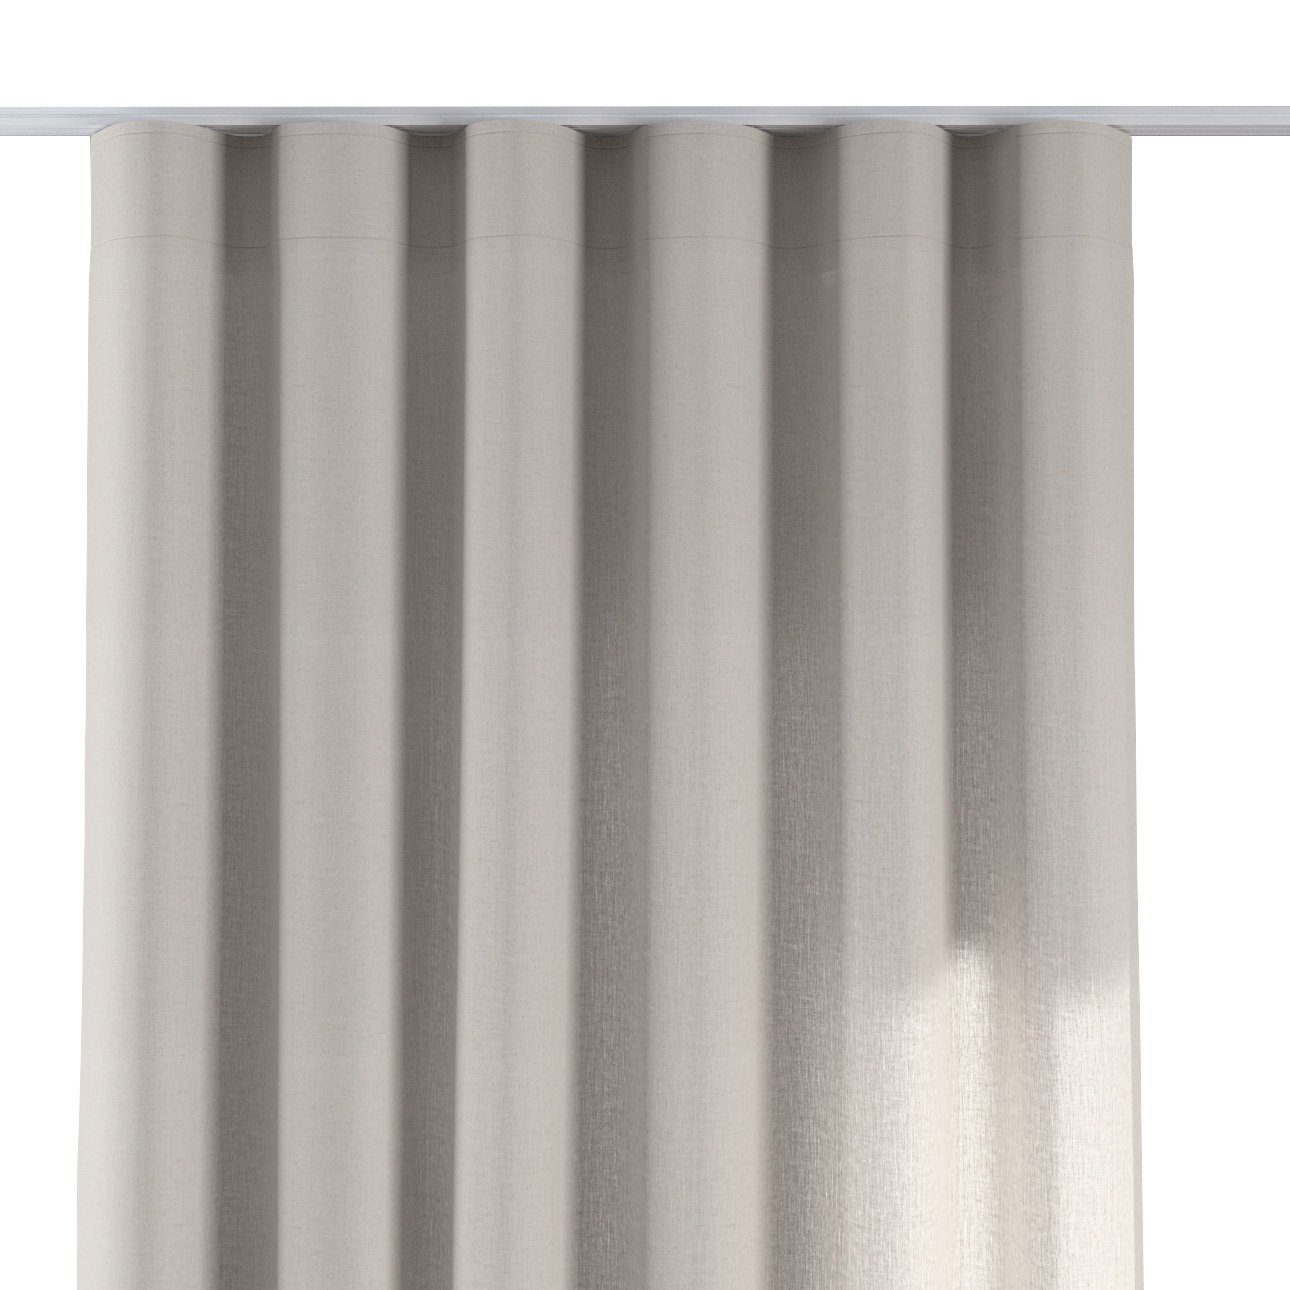 65 100 cm, Wellenvorhang Dekoria x Leinen, Vorhang grau-beige